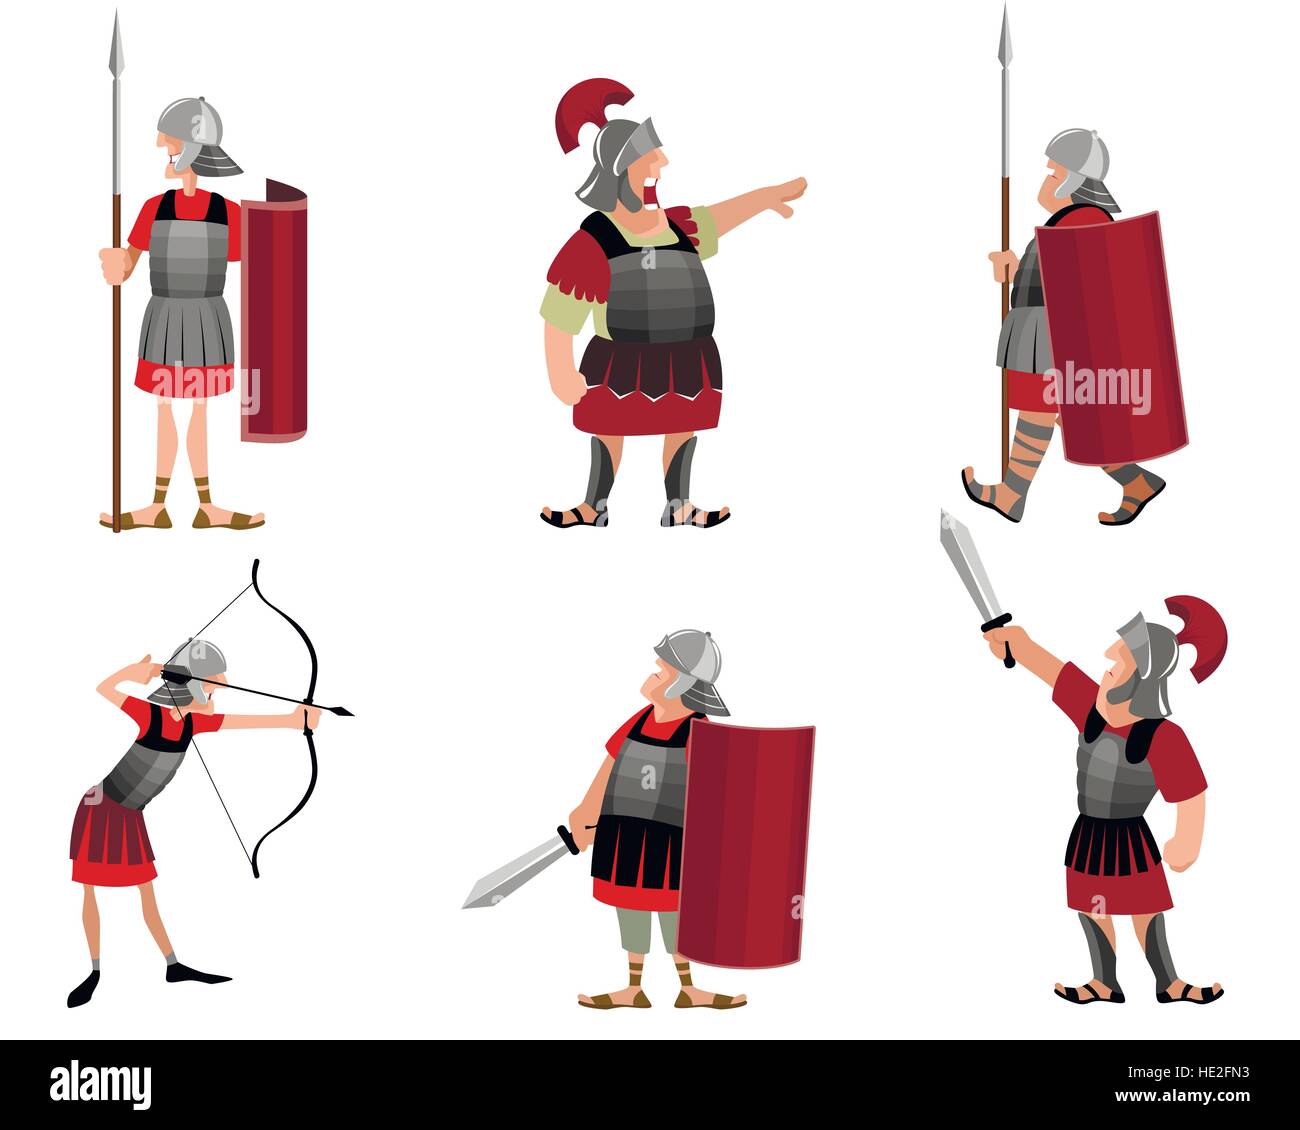 Illustrazione Vettoriale di sei guerrieri romani Illustrazione Vettoriale